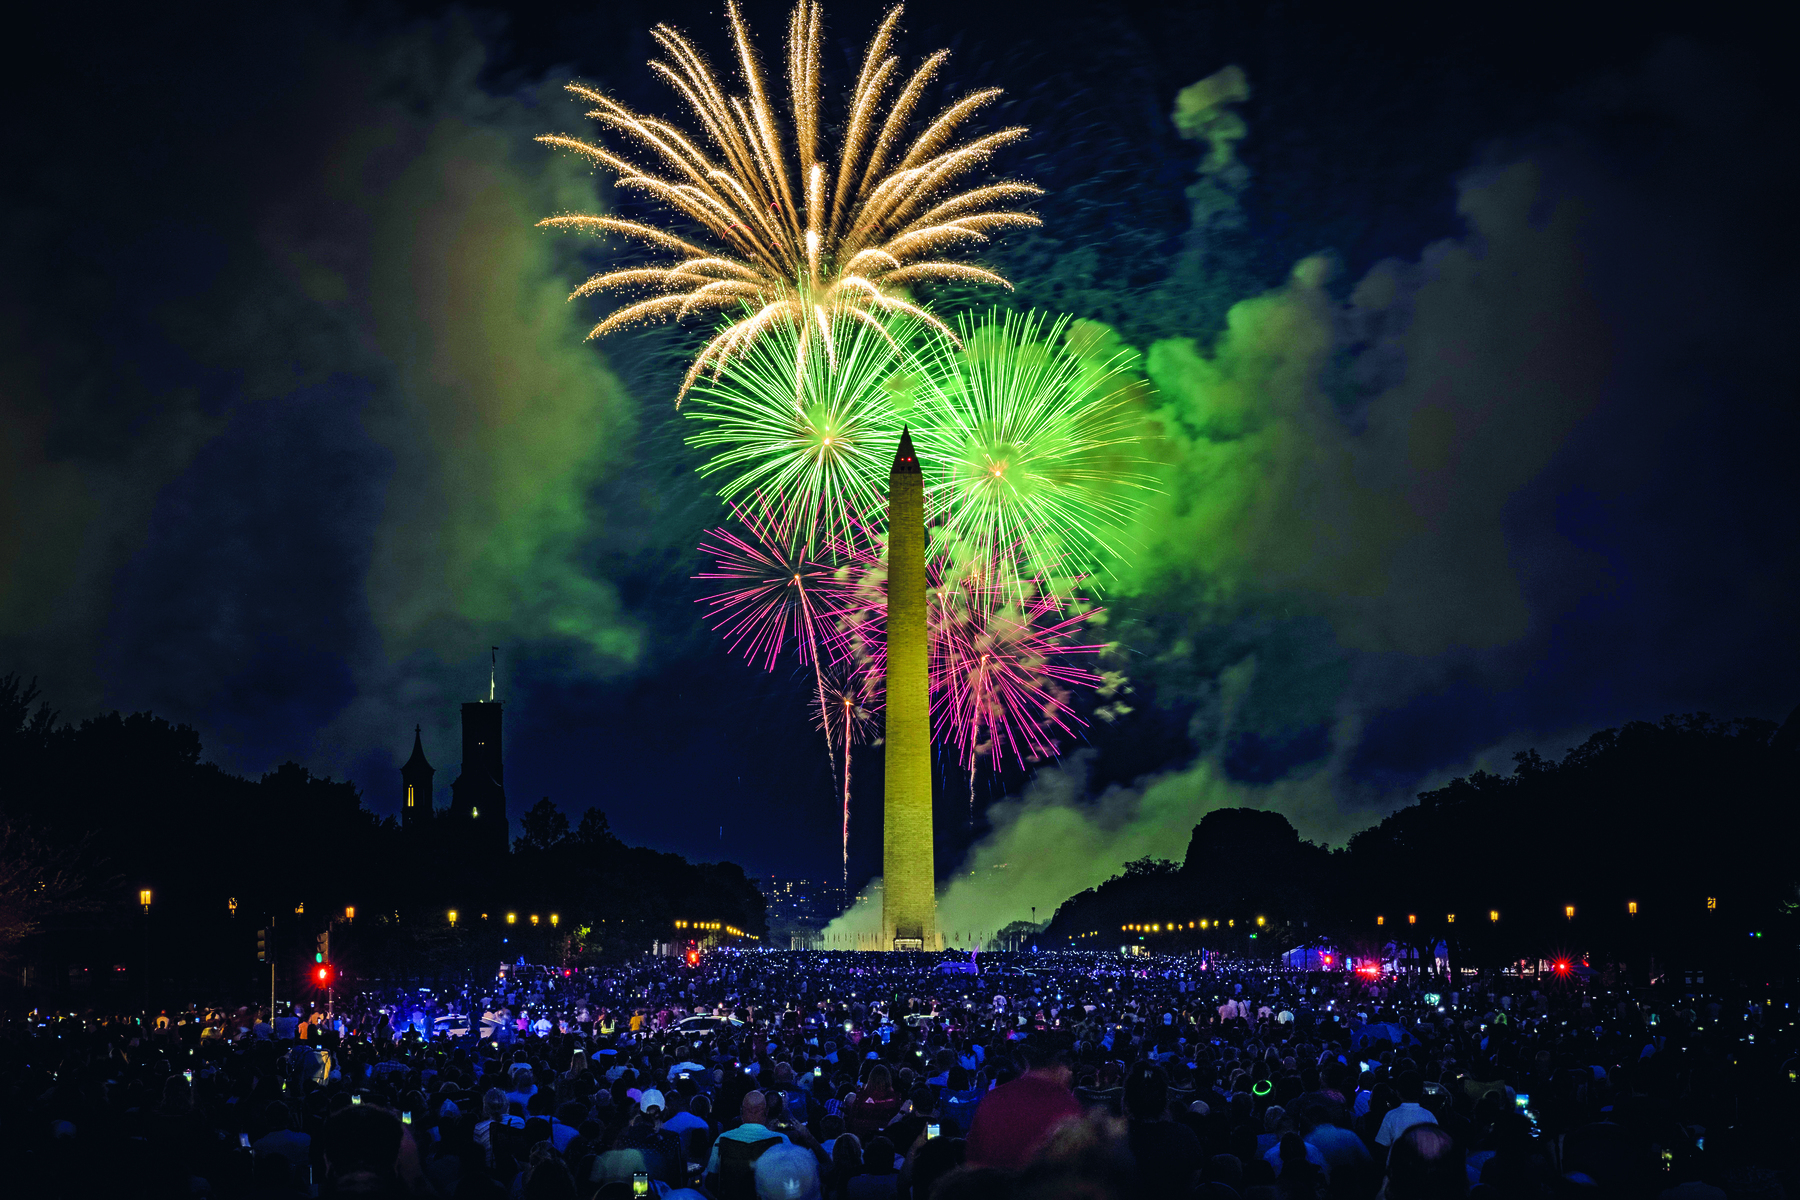 Fotografia. Multidão de pessoas assiste queima de fogos de artifício que colorem o céu noturno. Grandes feixes curvos e coloridos se espalhando pelo céu. No centro um obelisco, grande torre pontiaguda.